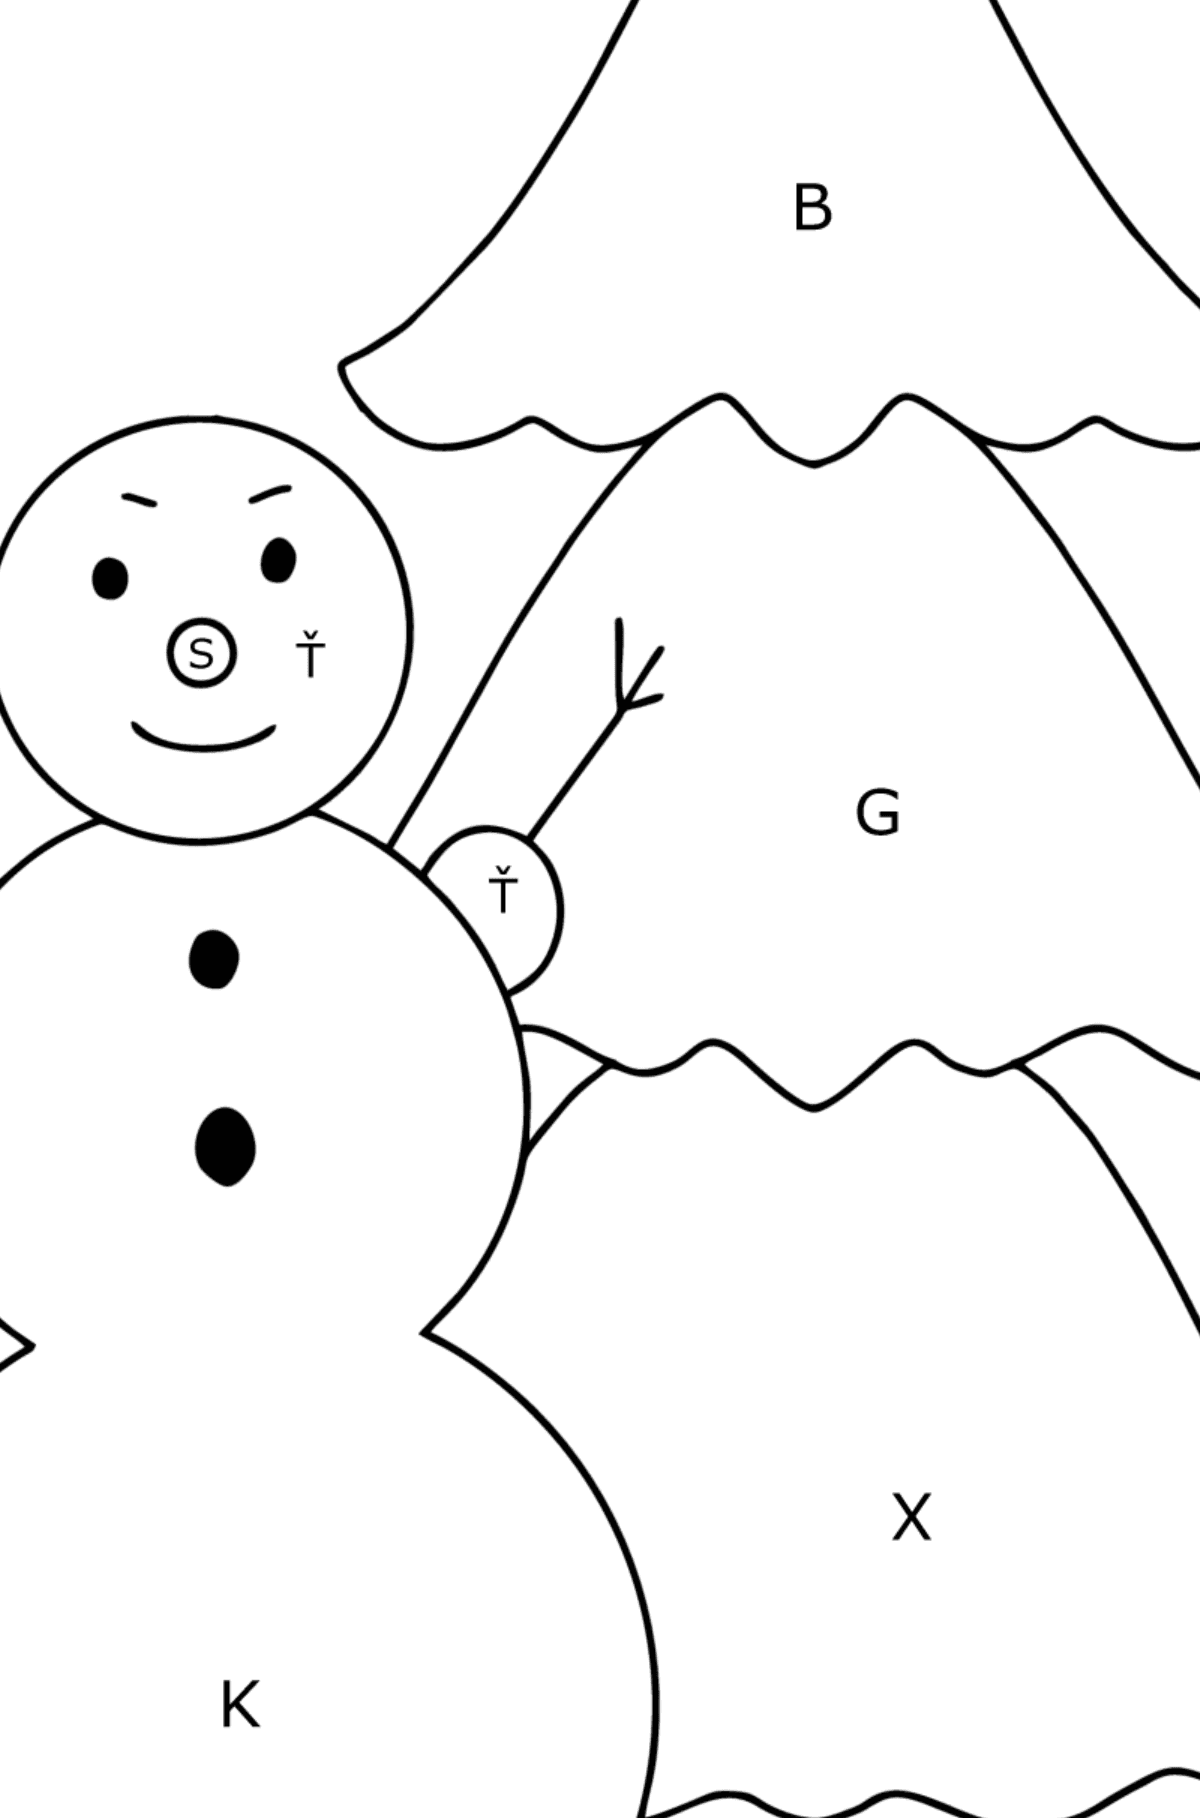 Omalovánka sněhulák a strom - Omalovánka podle Písmen pro děti